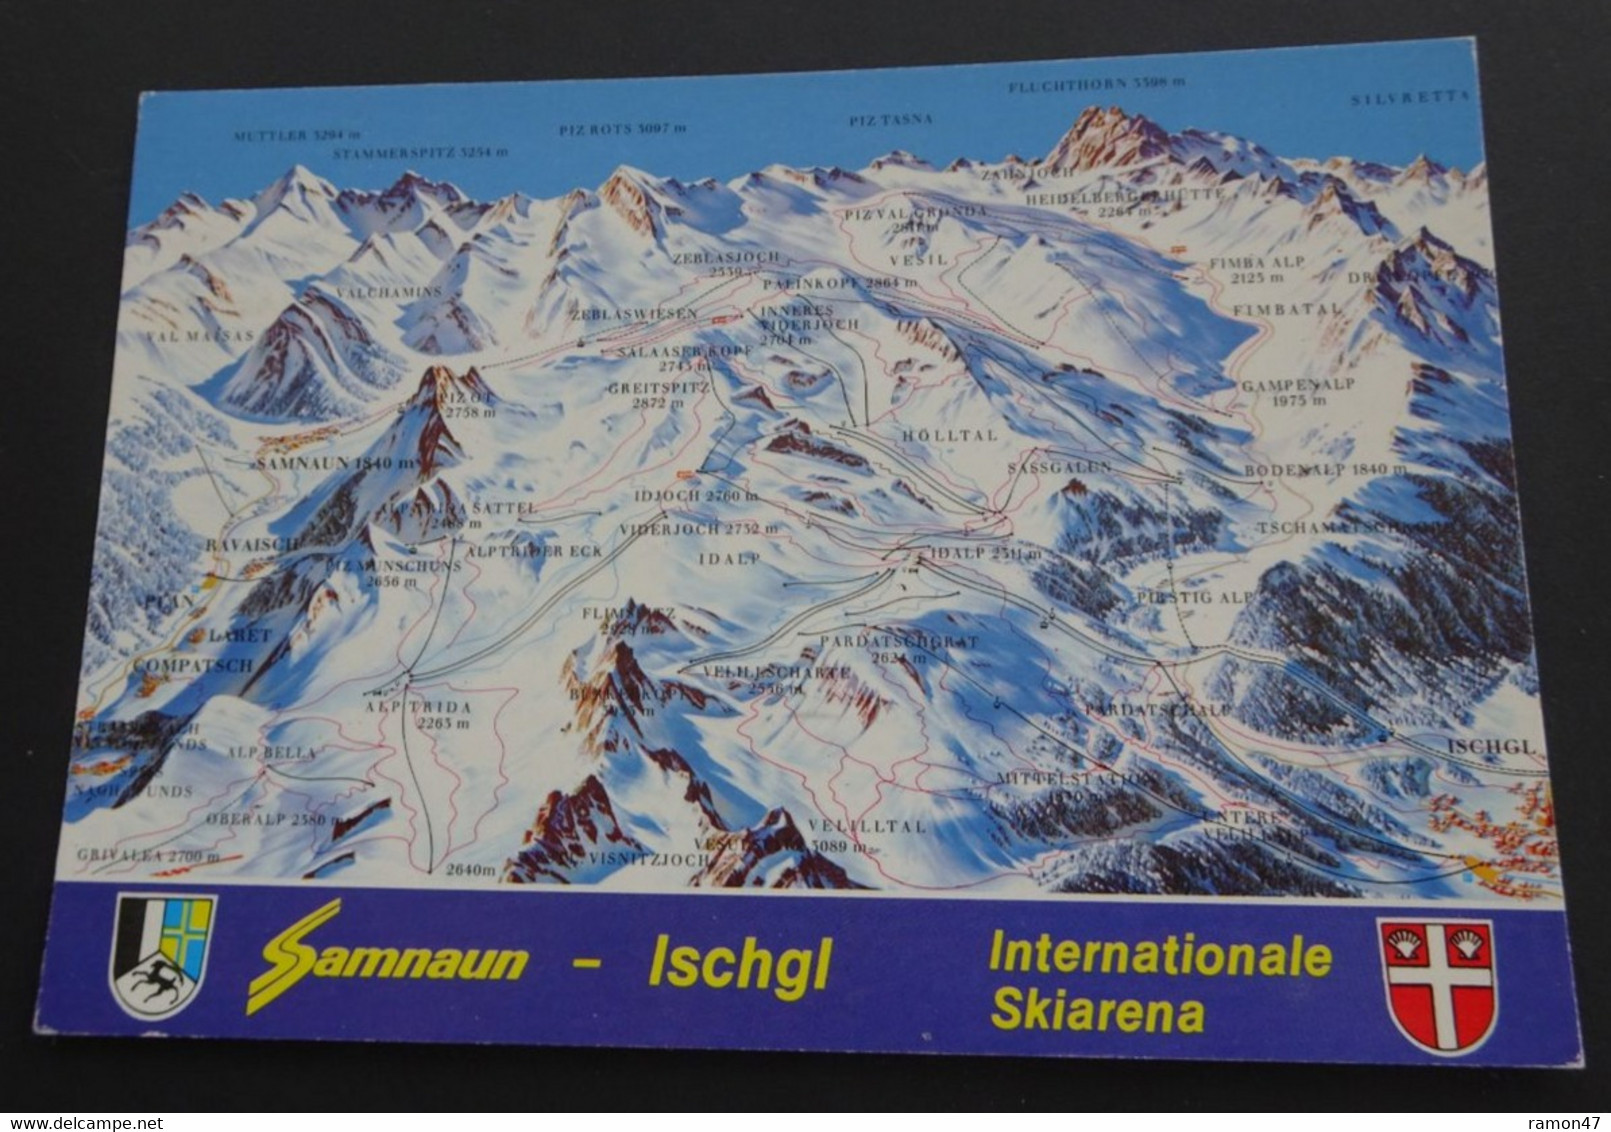 Samnaun - Ischgl - Internationale Skiarena - Rud. Suter, Oberrieden-Zürich - " 2660 - Samnaun